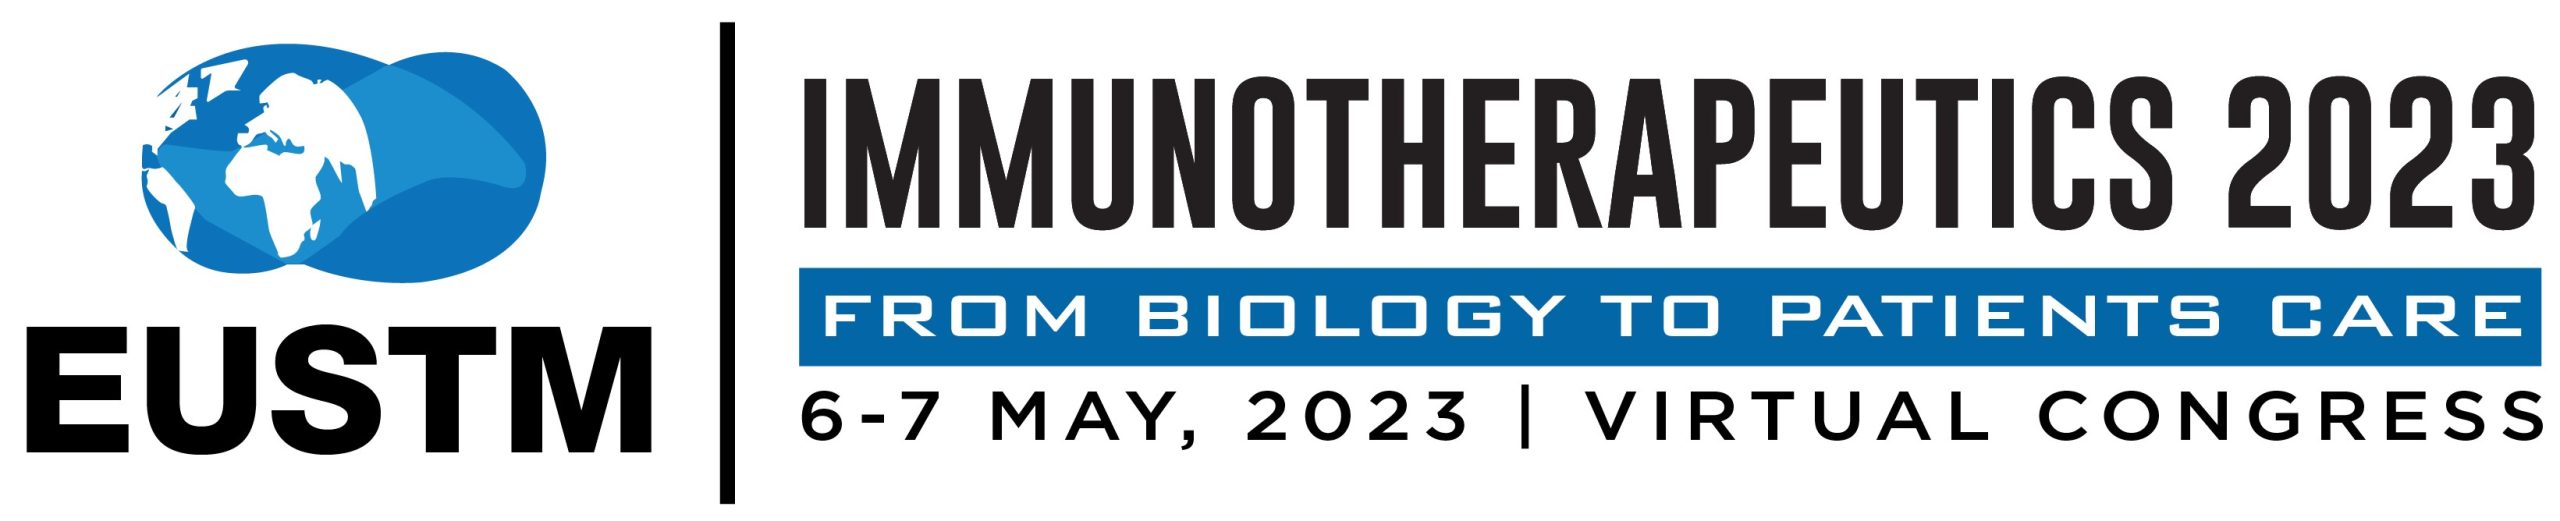 Immunotherapeutics 2023